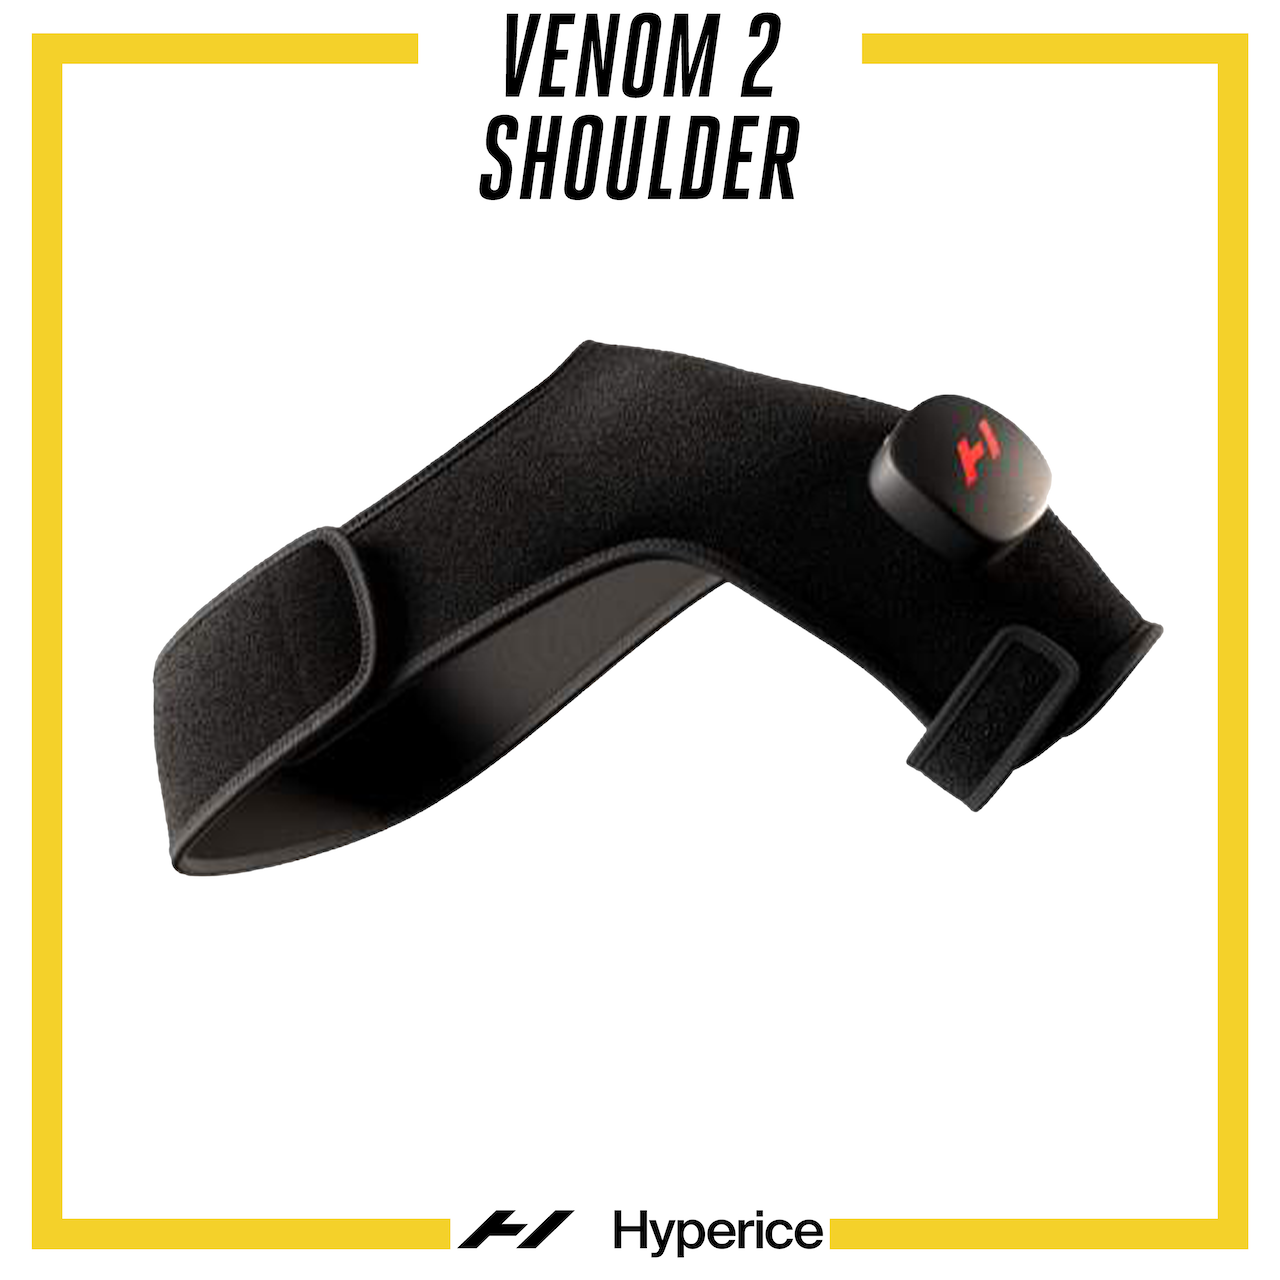 Venom 2 Shoulder